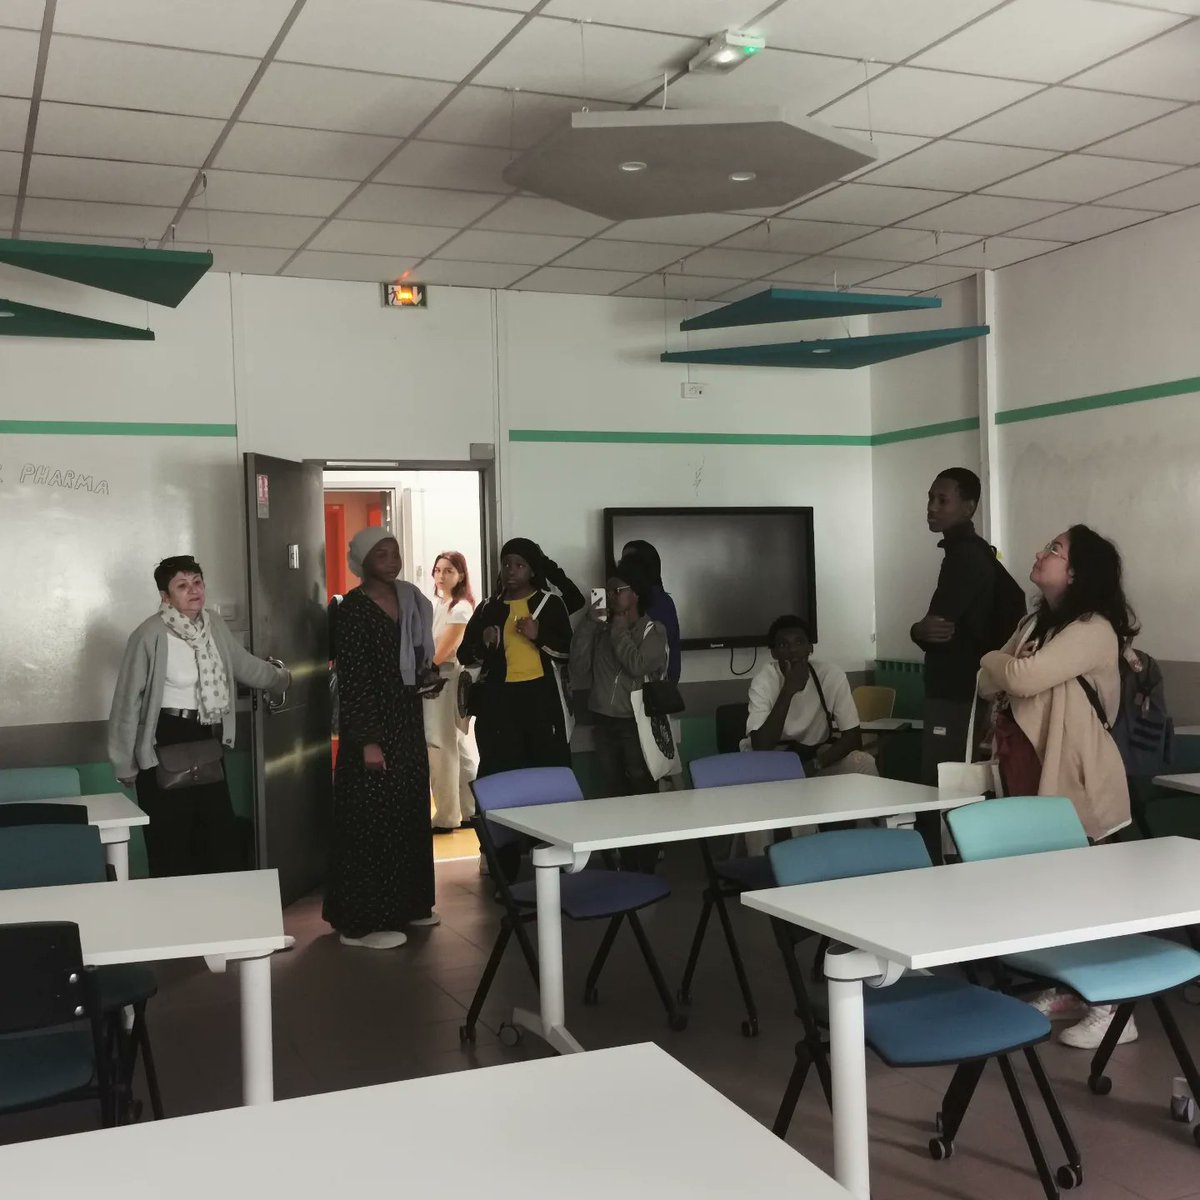 Ce matin, la Faculté de Pharmacie a accueilli 8 lycéens de Mayotte pour leur faire découvrir notre campus, les études de Pharmacie et leurs débouchés. Cette visite a eu lieu dans le cadre du dispositif les Cordées de la réussite organisé par @umontpellier et @univ_mayotte